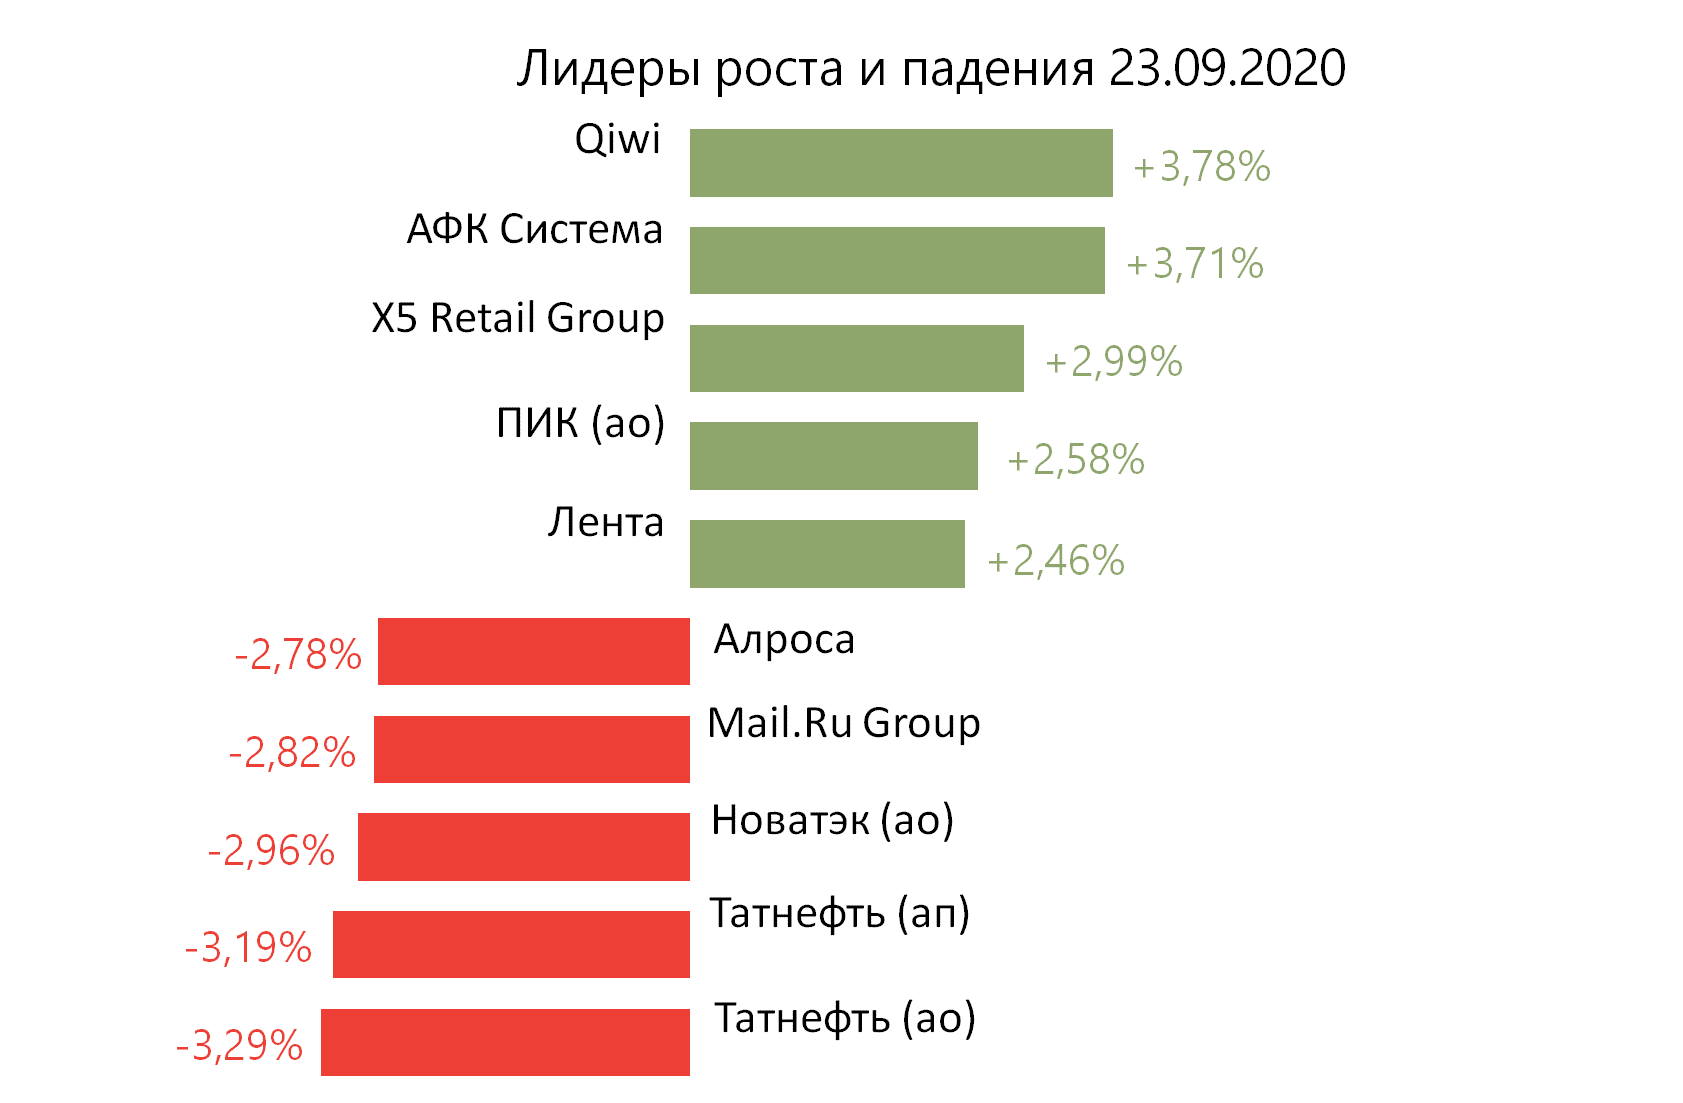 Лидеры роста и падения российского рынка на 23 сентября